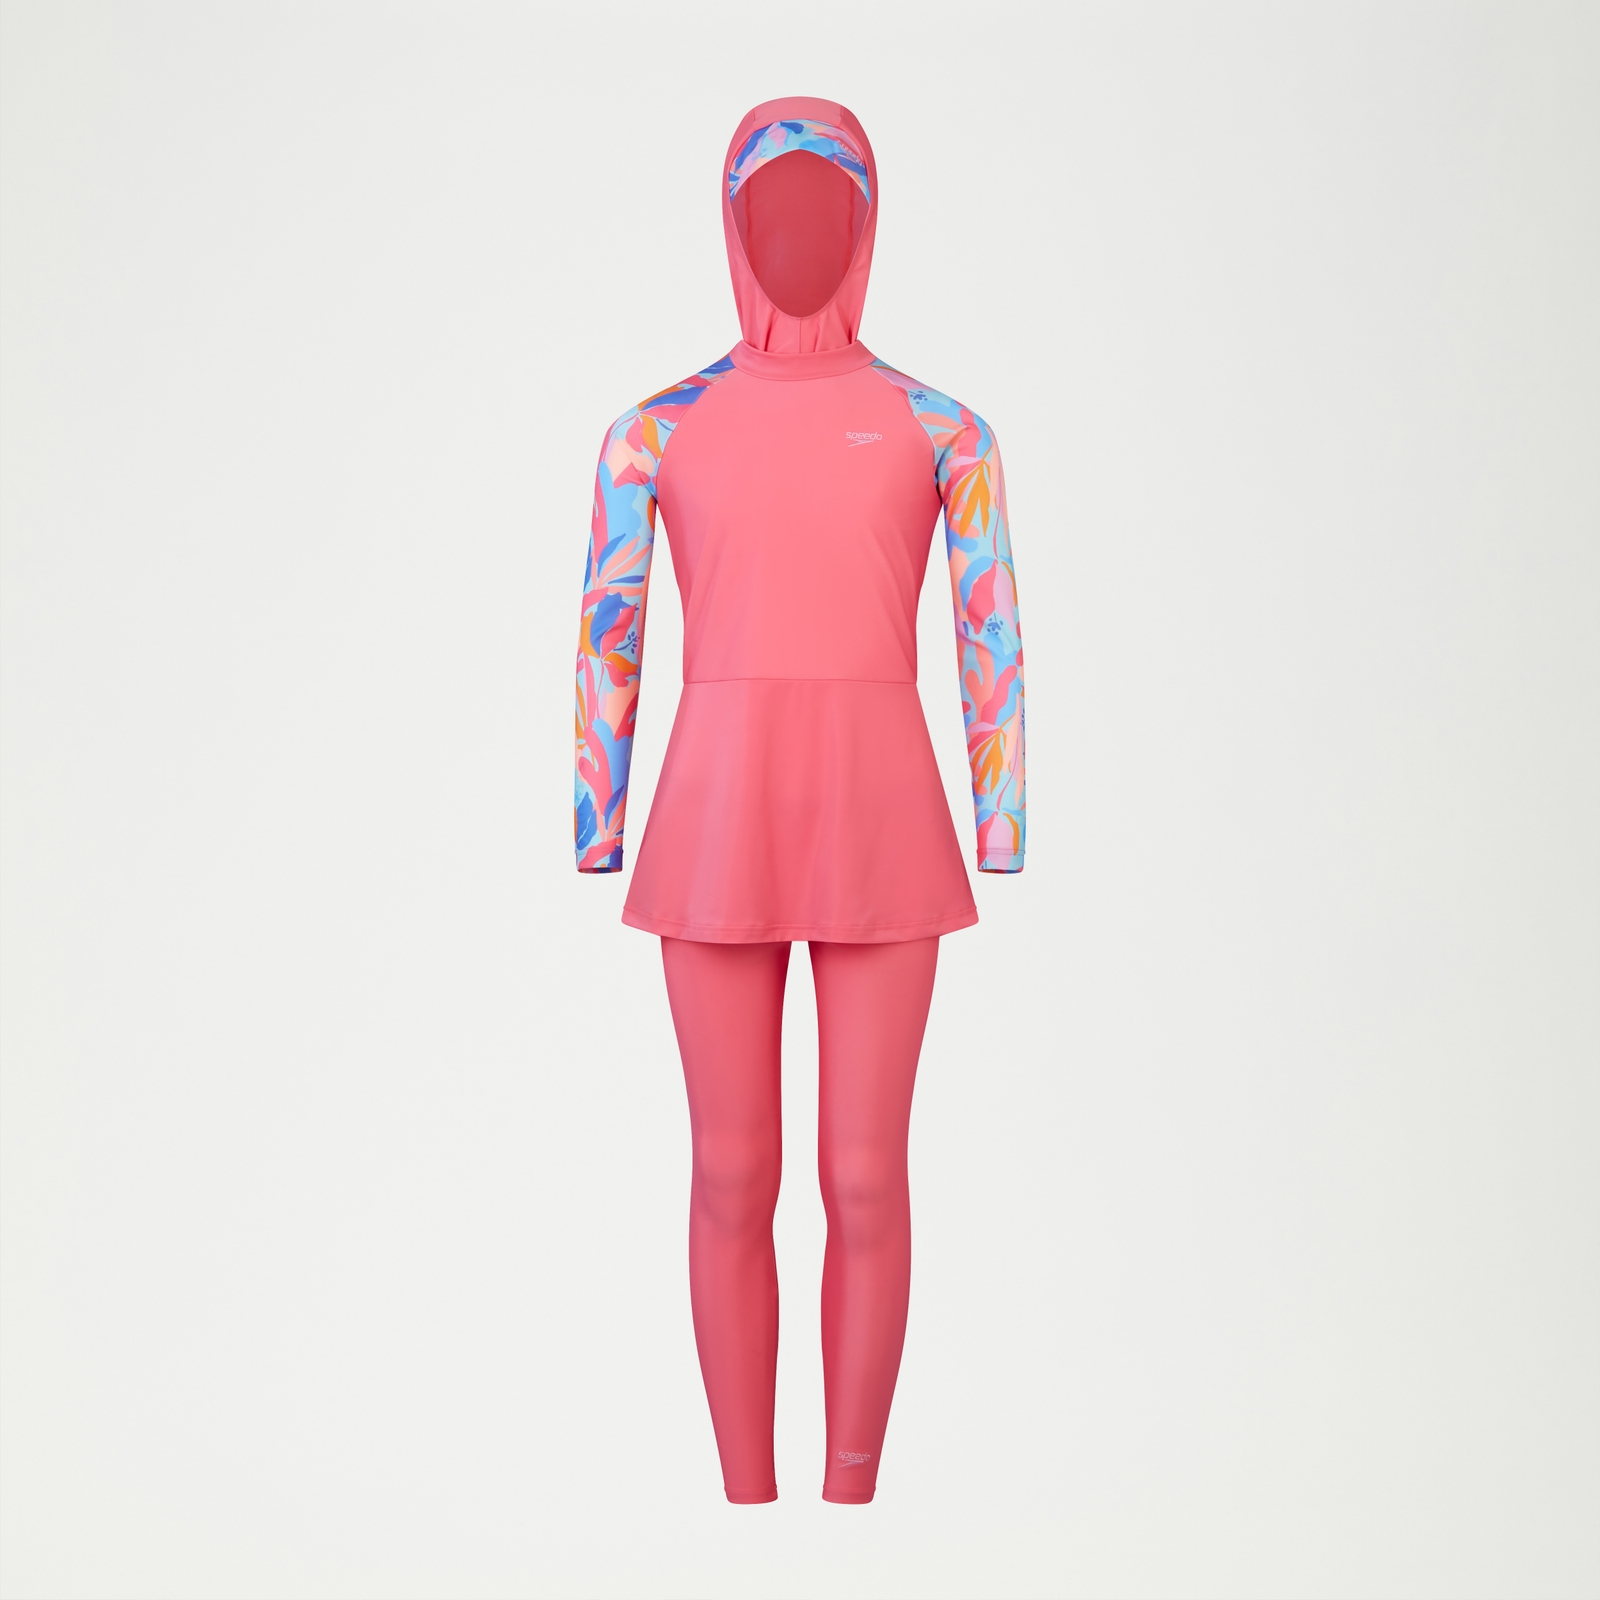 Diskreter 3-teiliger bedruckter Badeanzug für Mädchen Pink/Blau